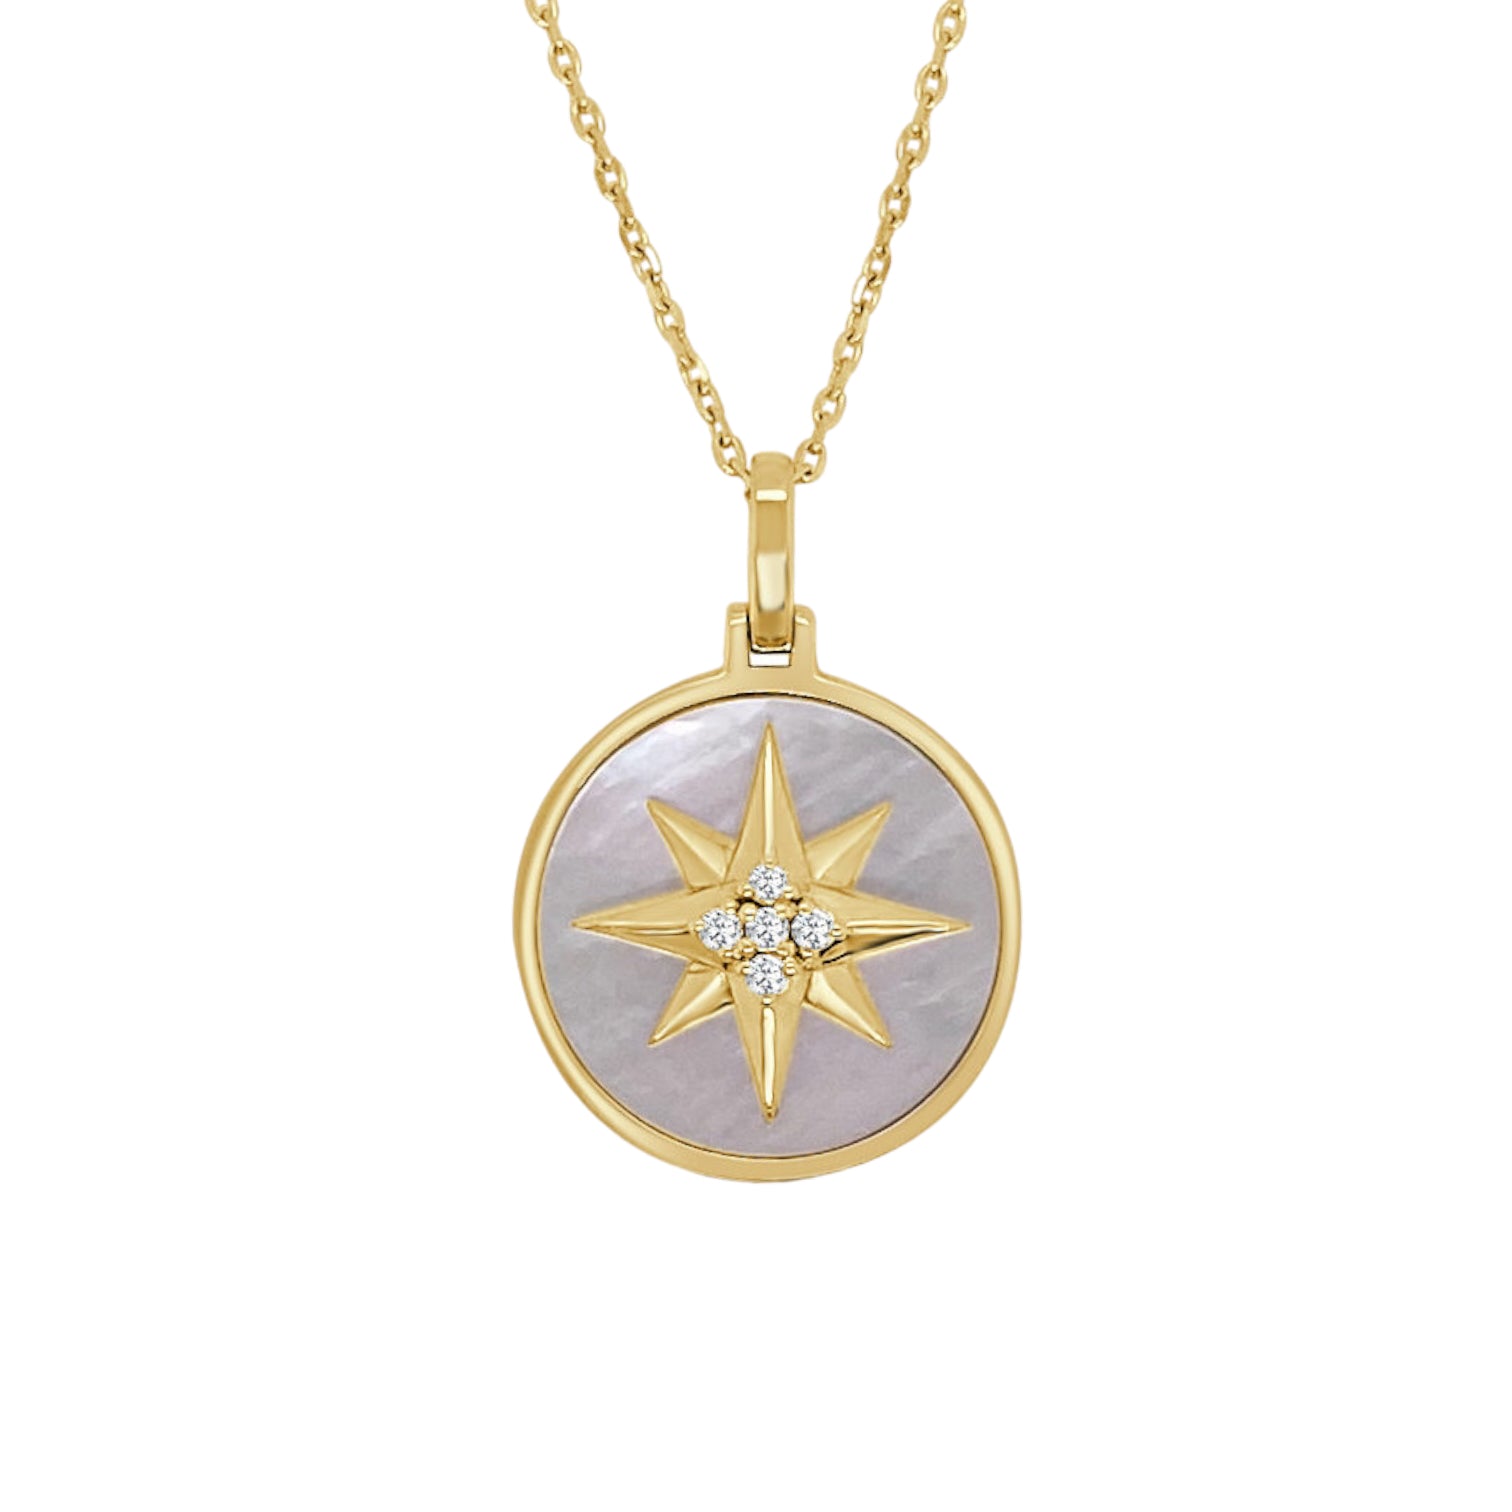 Atlas | Gold-tone Compass and Azurmalachite Pendant Necklace | In stock! |  Arkai